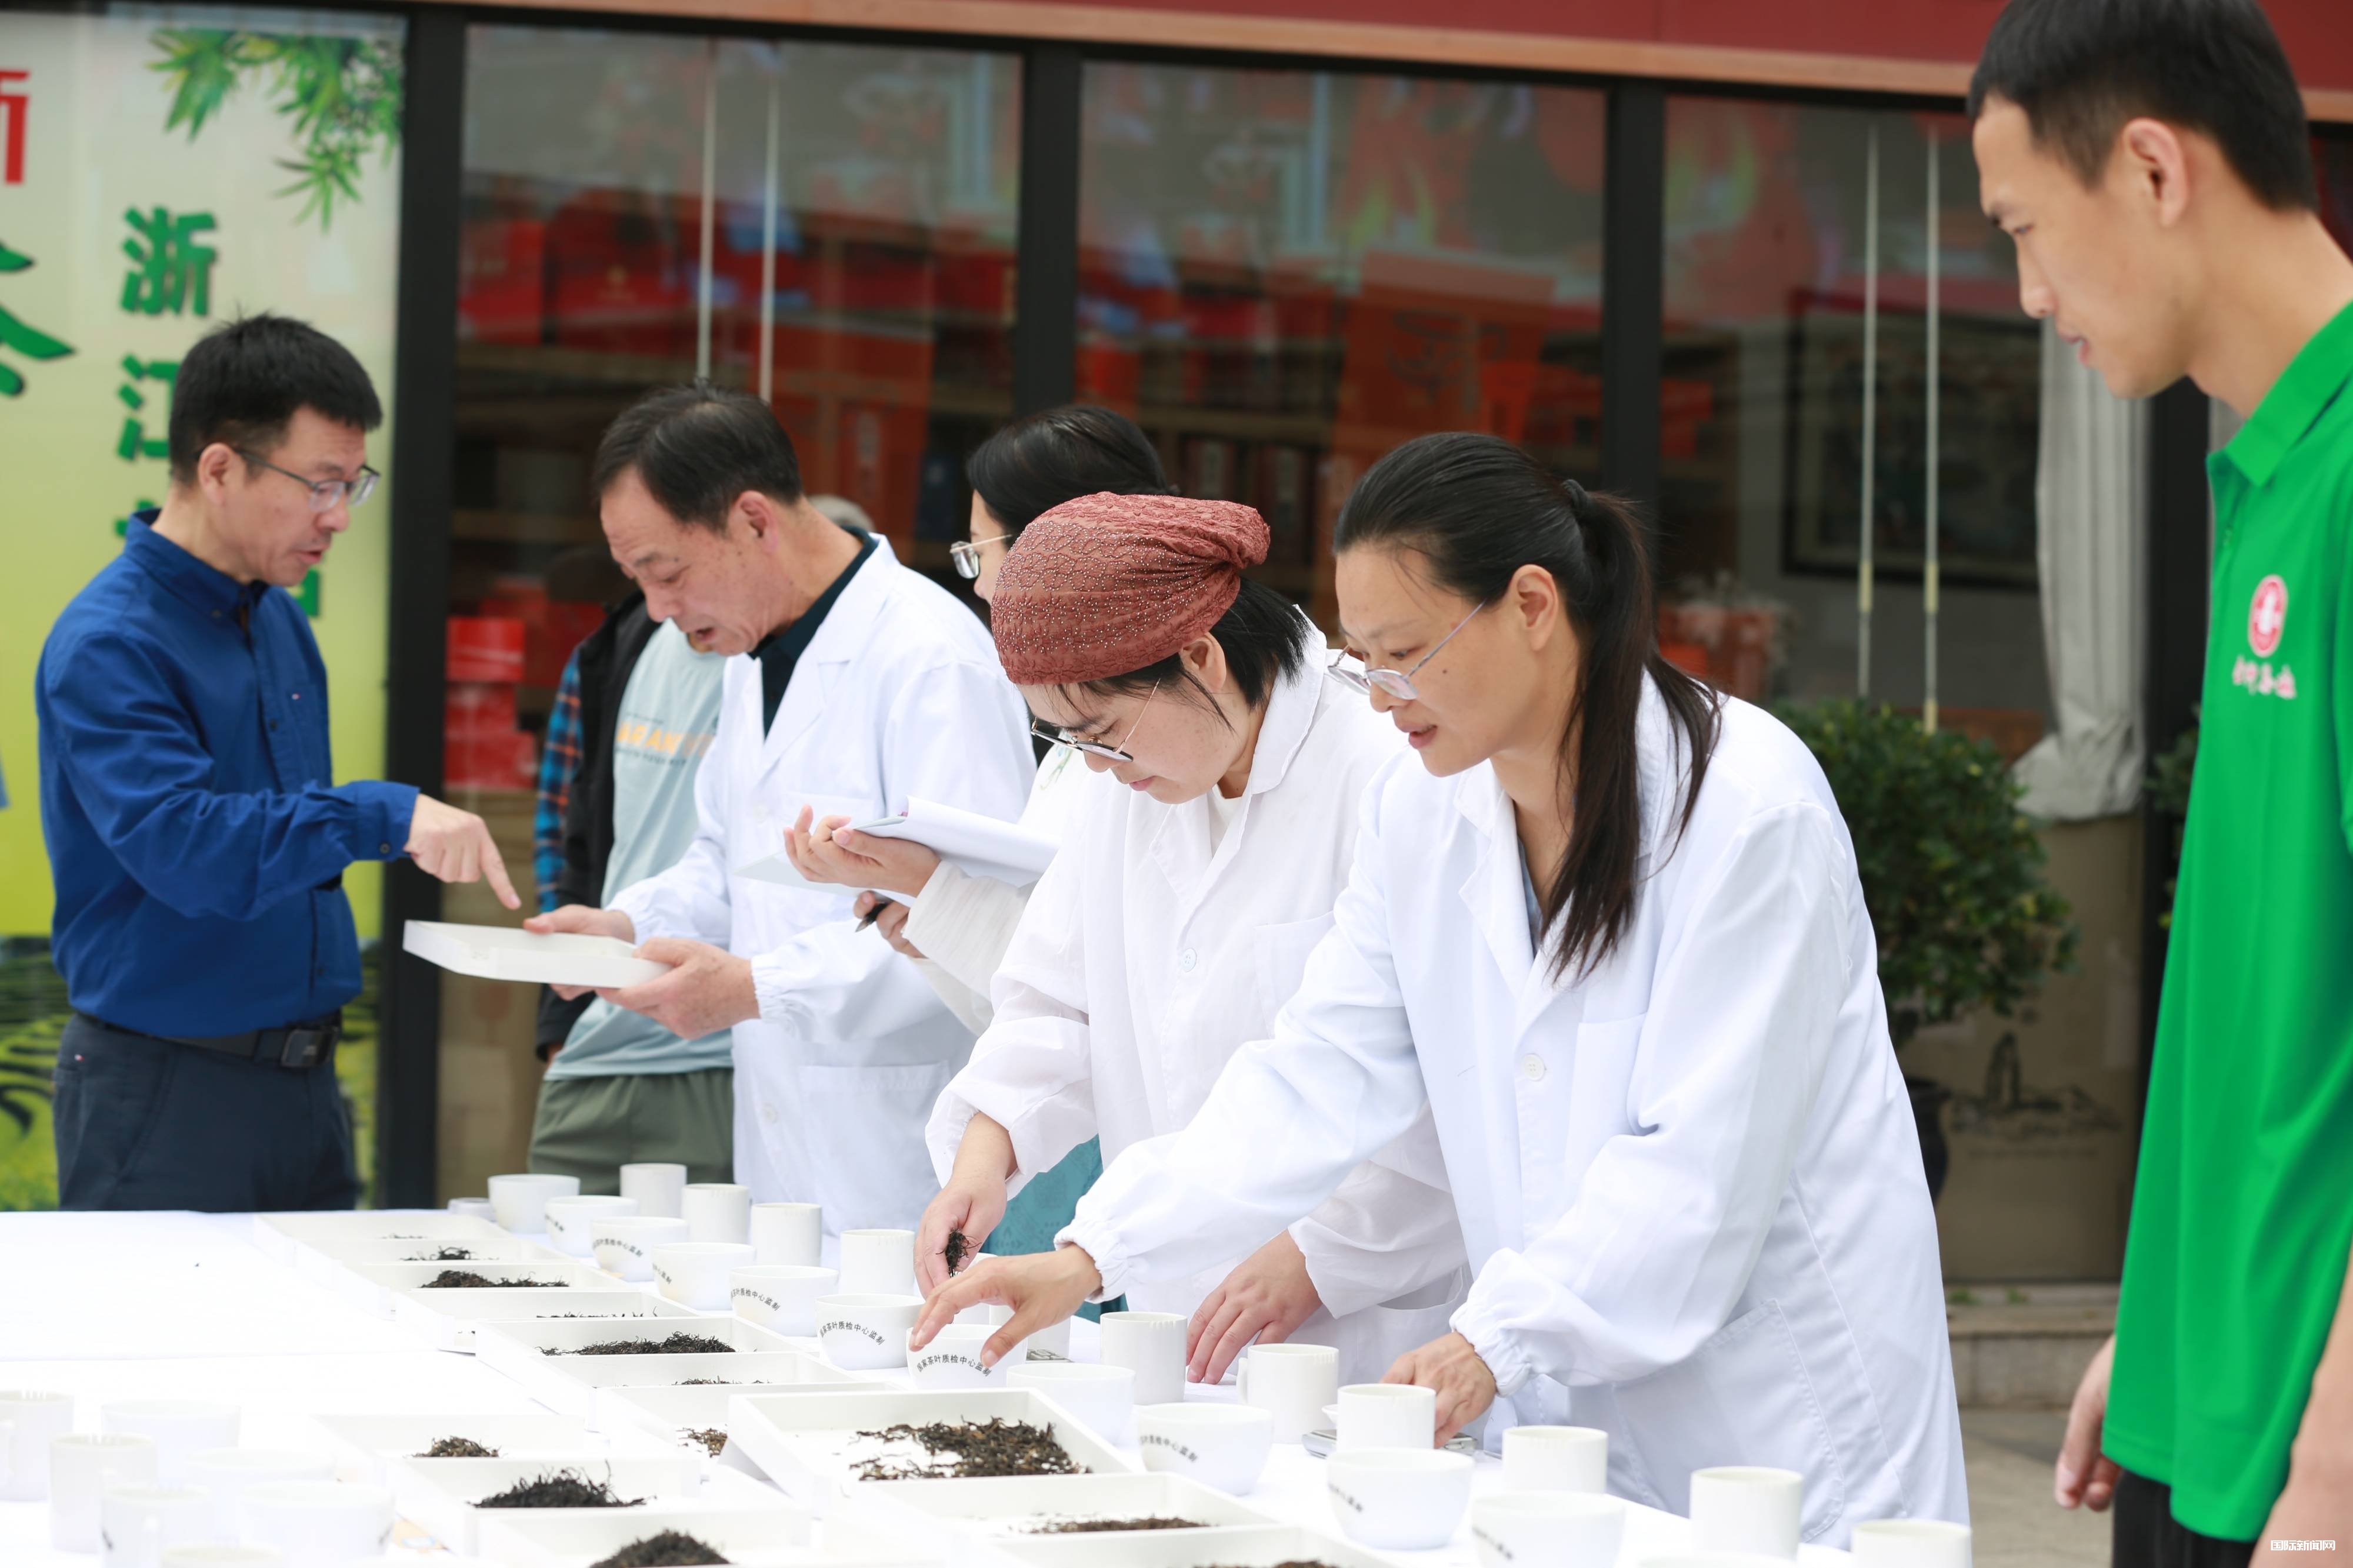 第二届“一带一路”明州杯斗茶大会暨金钟茶城十五周年活动在宁波举行